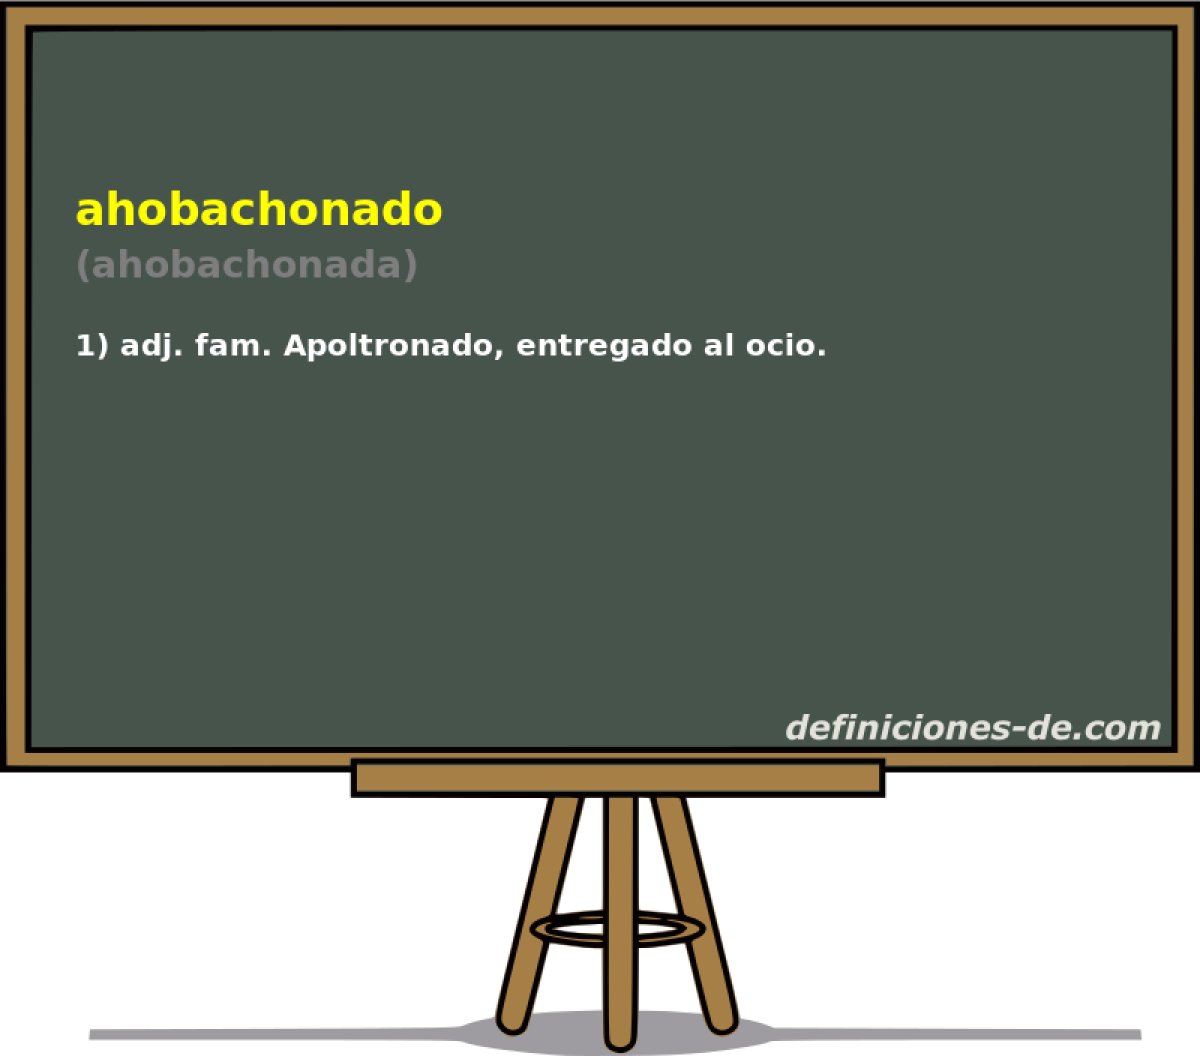 ahobachonado (ahobachonada)